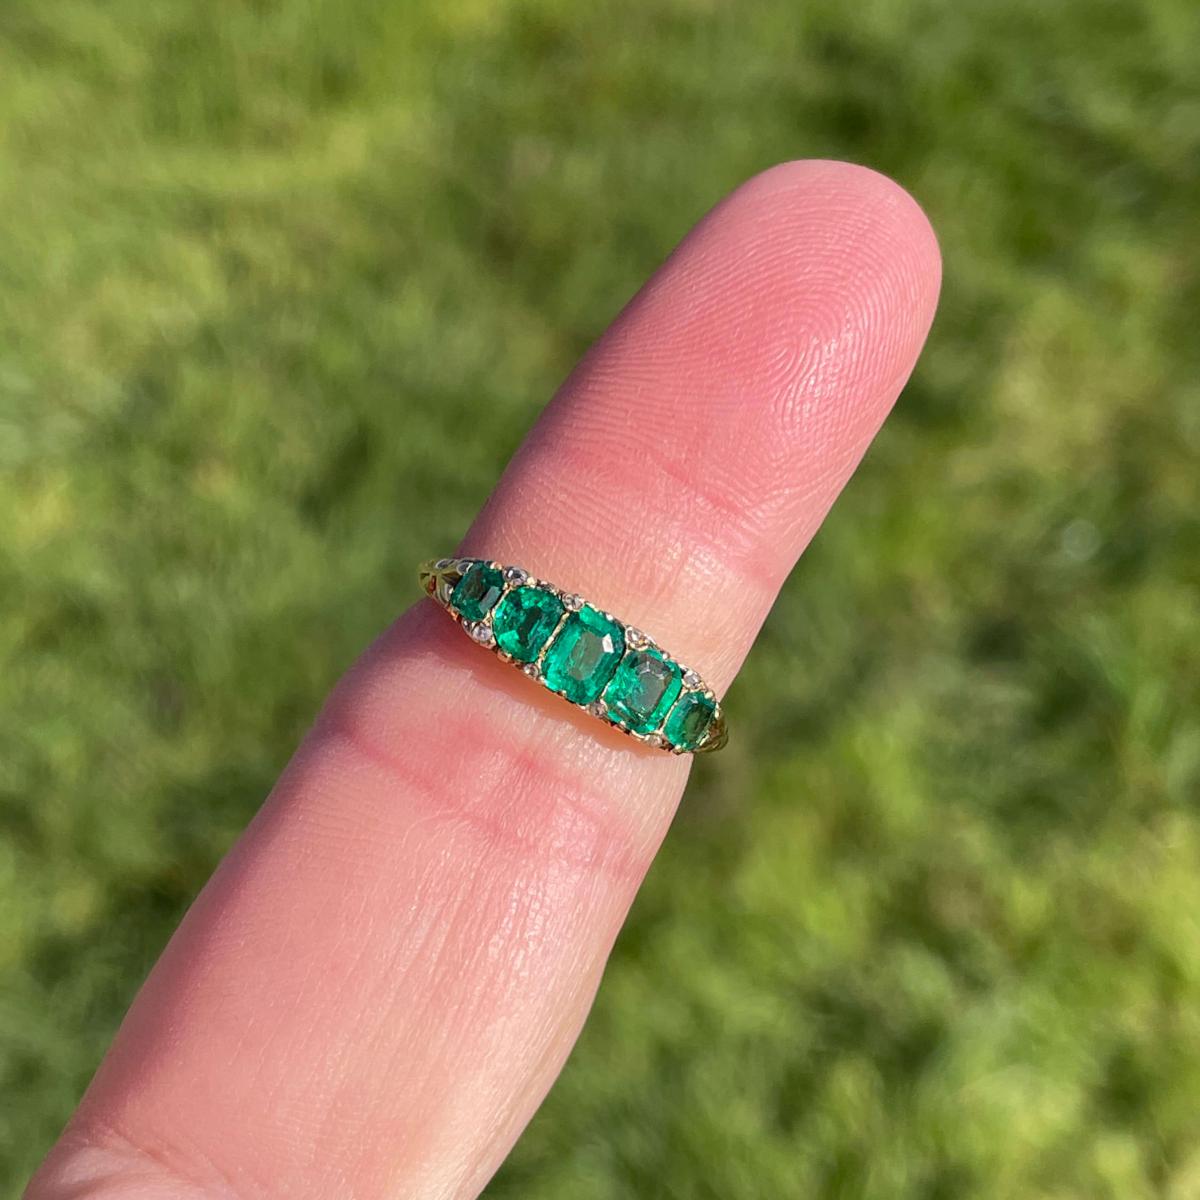 Edwardian Emerald 5 Stone Ring c.1905